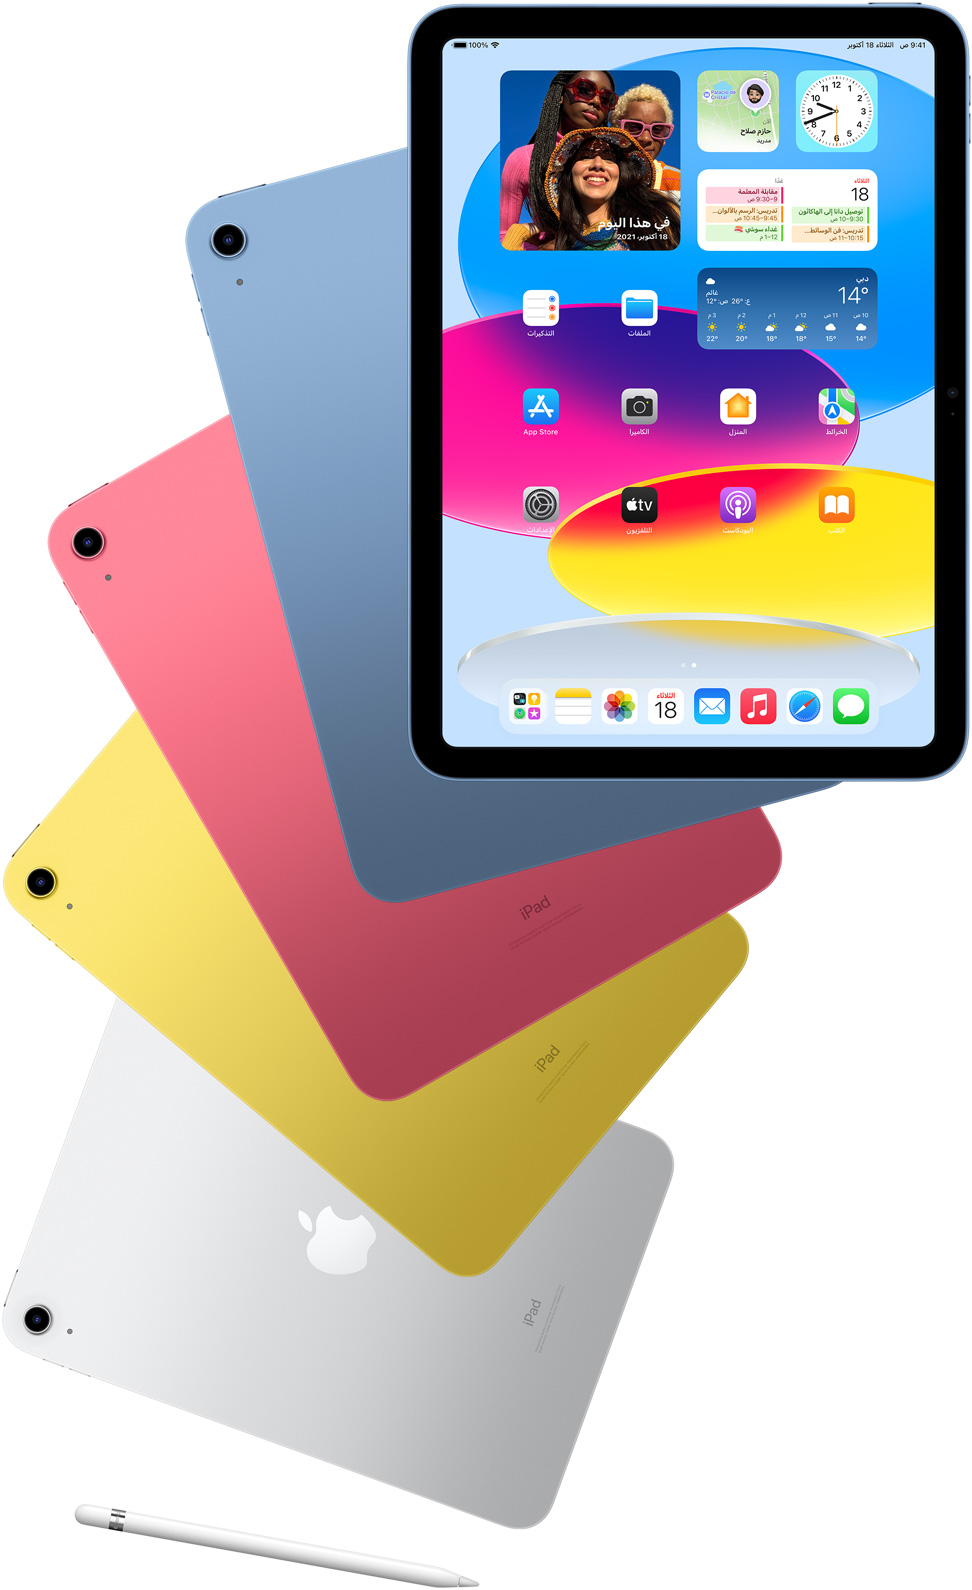 لقطة لجهاز iPad من الأمام تعرض شاشته الرئيسية، مع أجهزة iPad أخرى وراءه باللون الأزرق والوردي والأصفر والفضي تعرض جانبها الخلفي. قلم Apple موضوع بجوار تشكيلة موديلات iPad